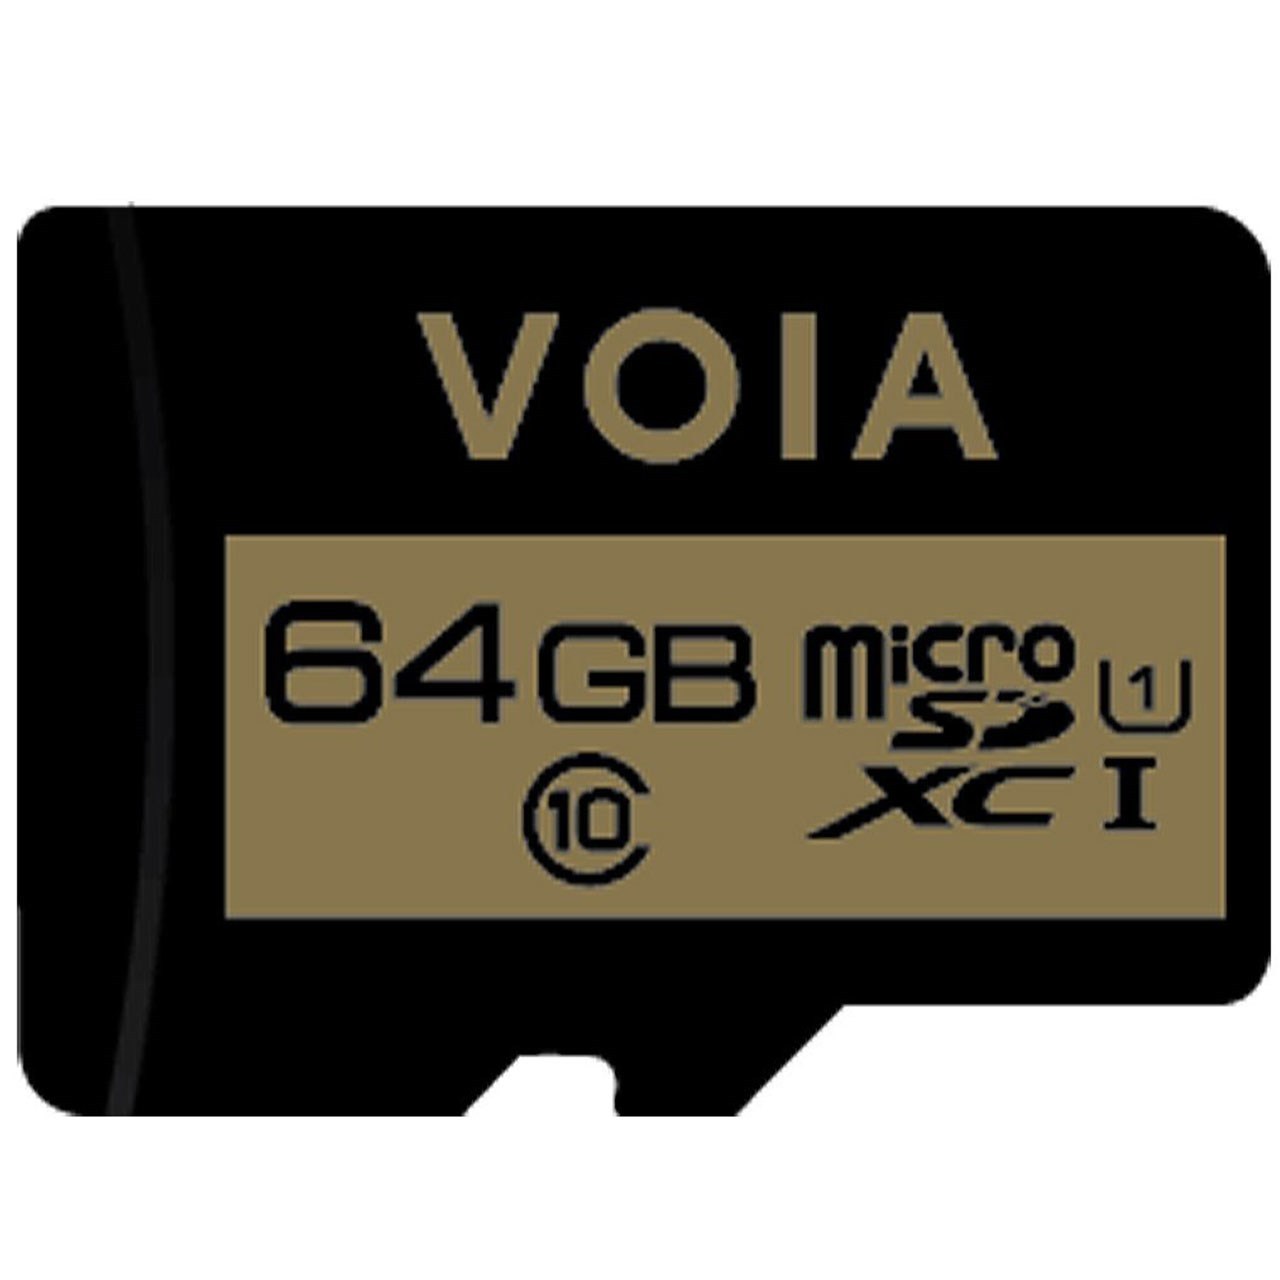 کارت حافظه microSDXC وویا کلاس 10 استاندارد UHS-I U1 ظرفیت 64 گیگابایت